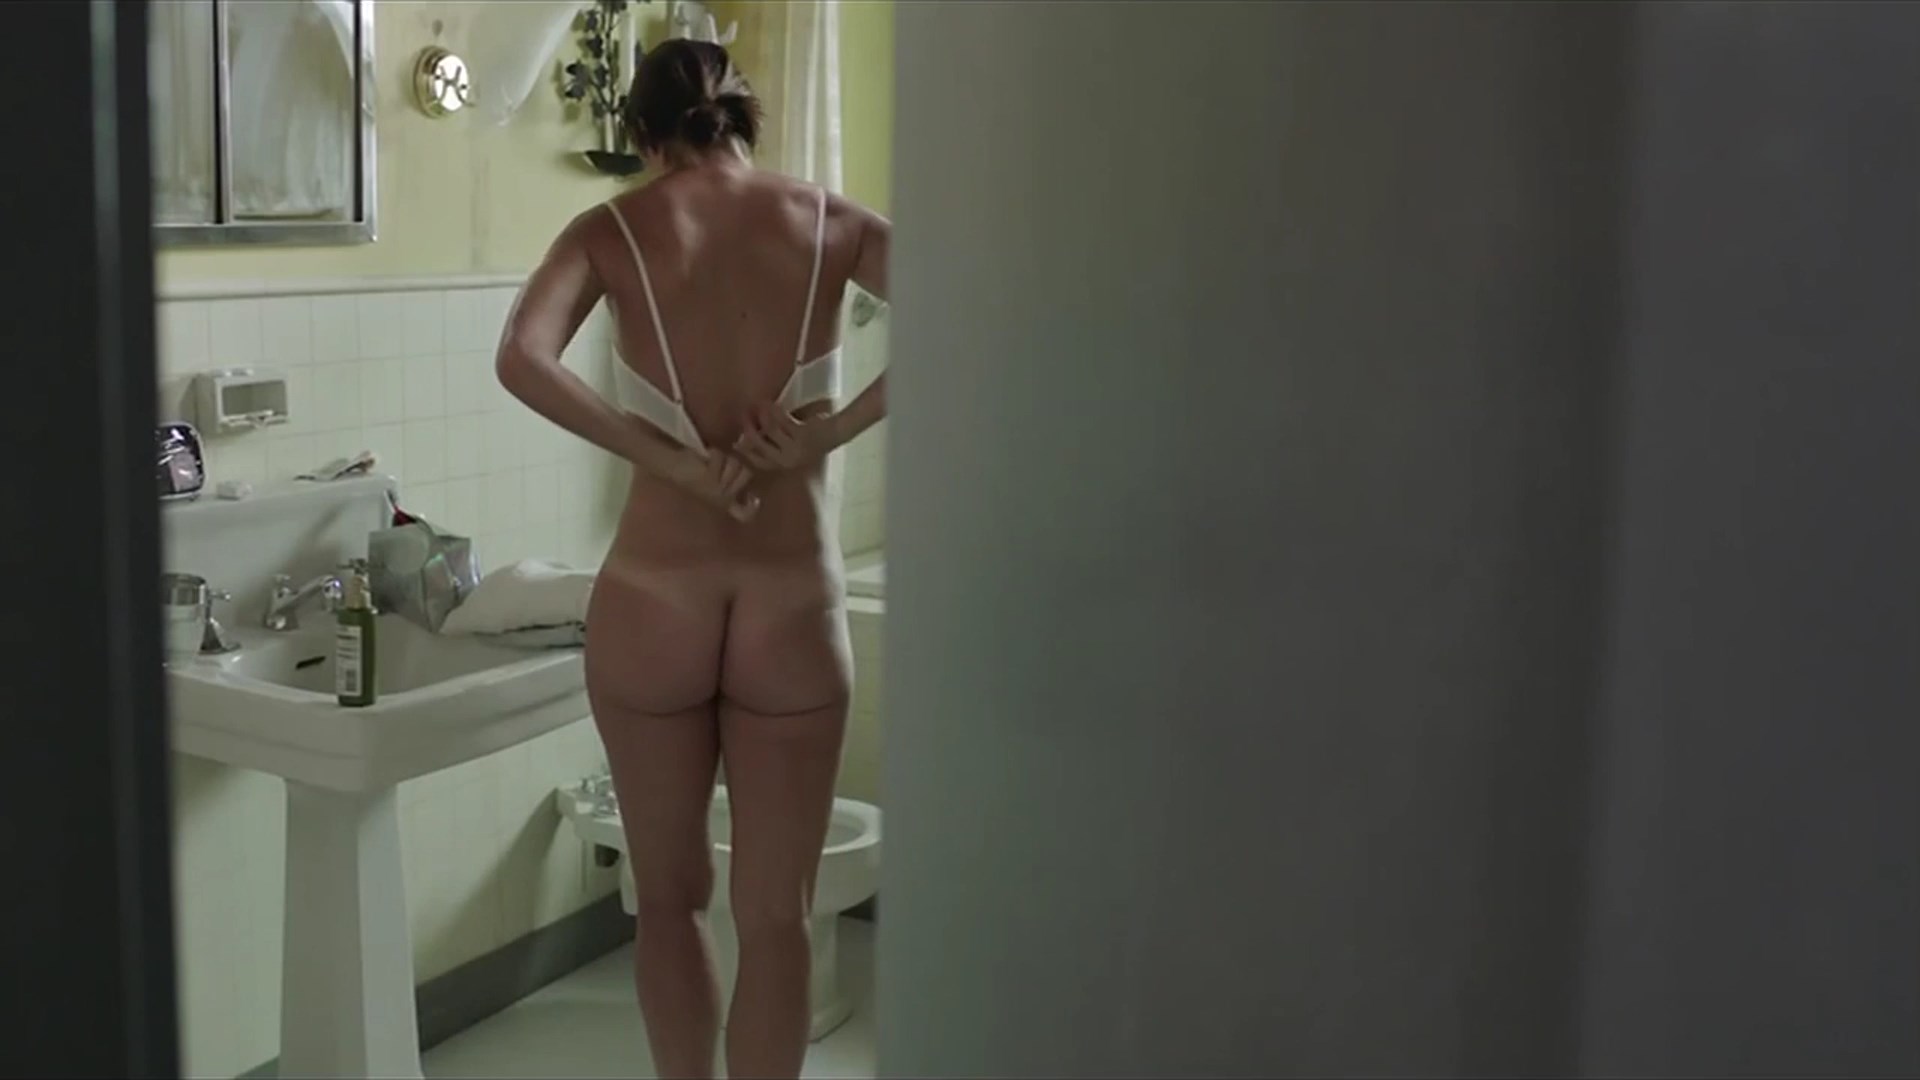 Nude Video Celebs Carolina Ramirez Nude Nina Errante 2